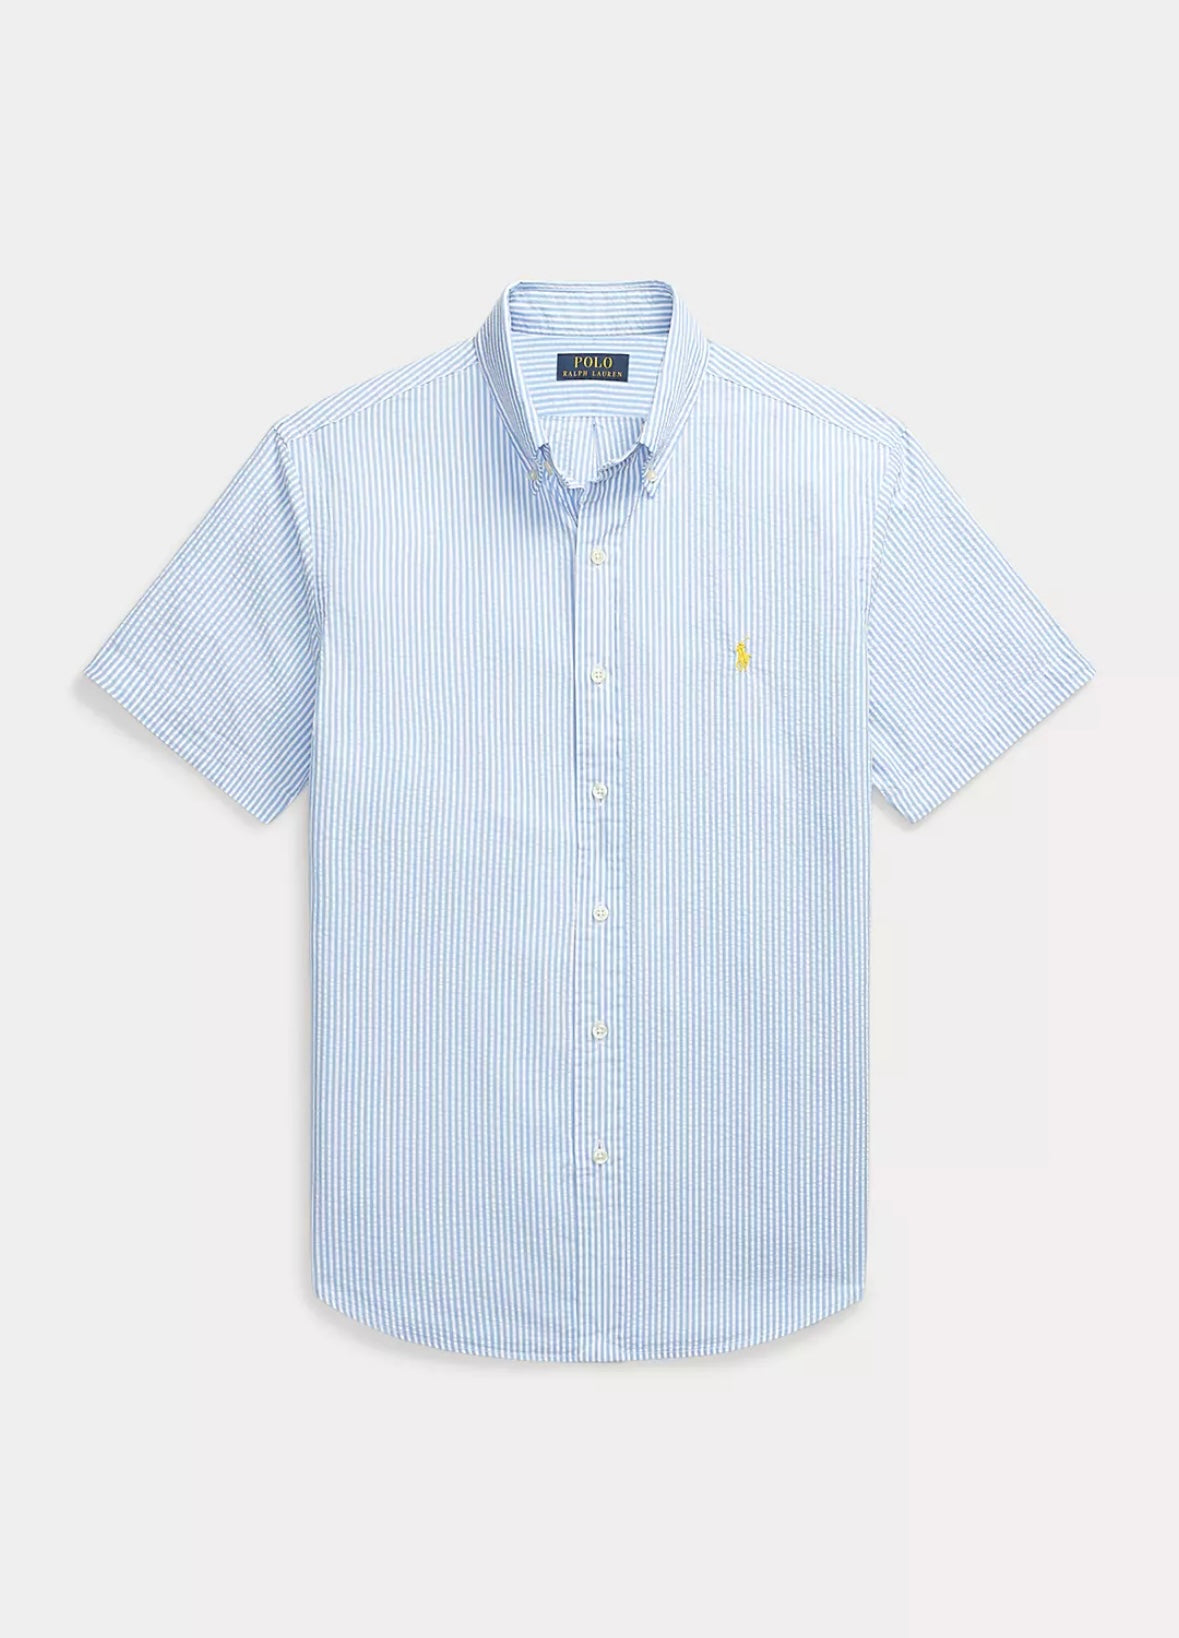 Polo Ralph Lauren Crepe Short shirt - Blue/White